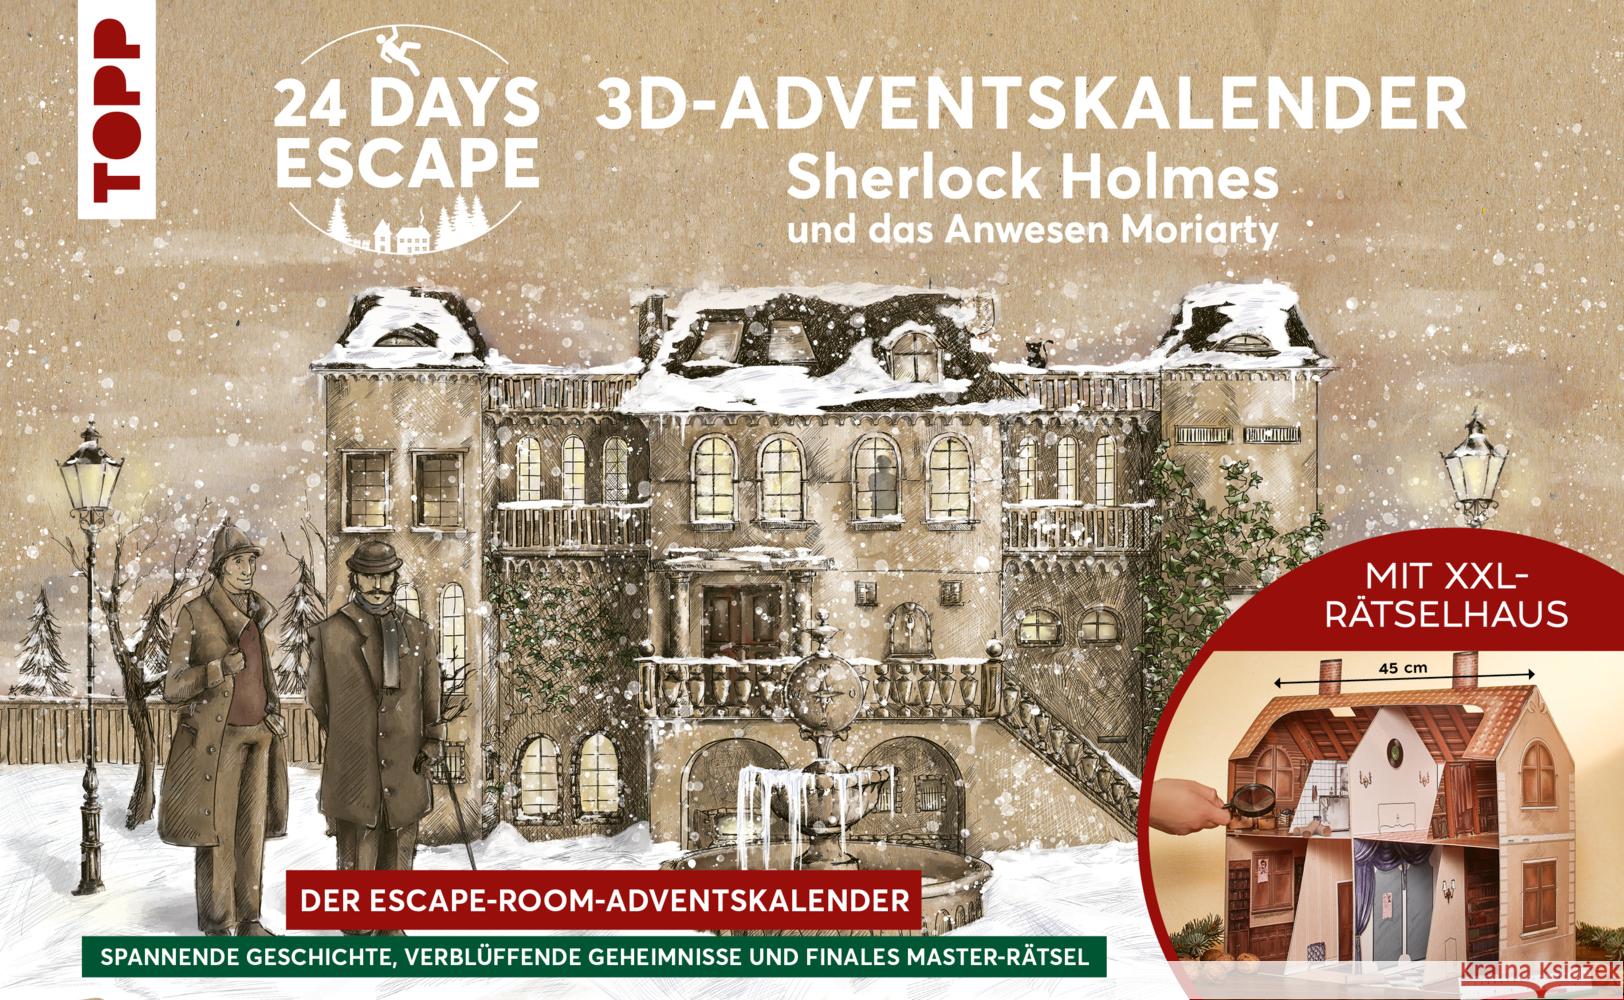 TOPP 24 Days Escape: 3D-Adventskalender - Sherlock Holmes und das Anwesen Moriarty Zhang, Yoda, Rehm, Sara 4007742181925 Frech